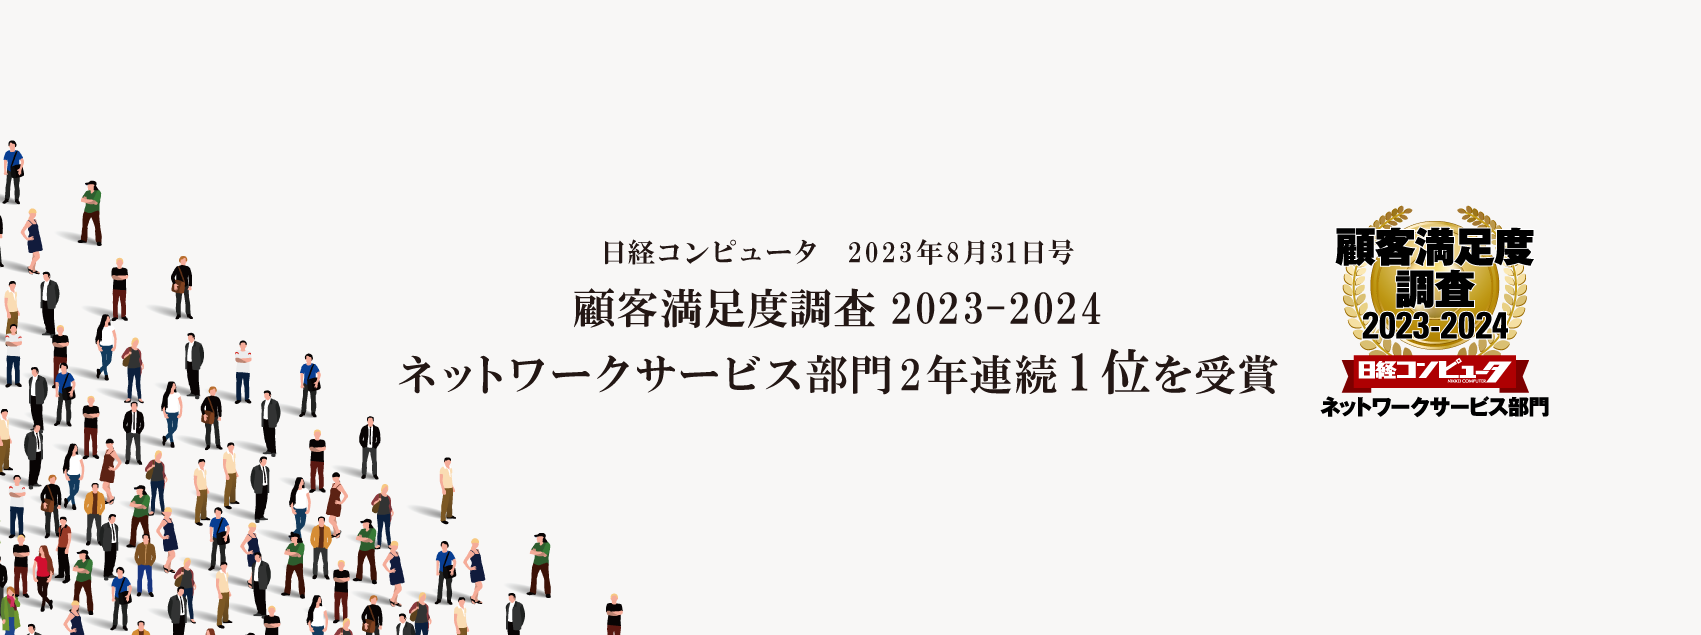 「日経コンピュータ 顧客満足度調査 2023-2024」